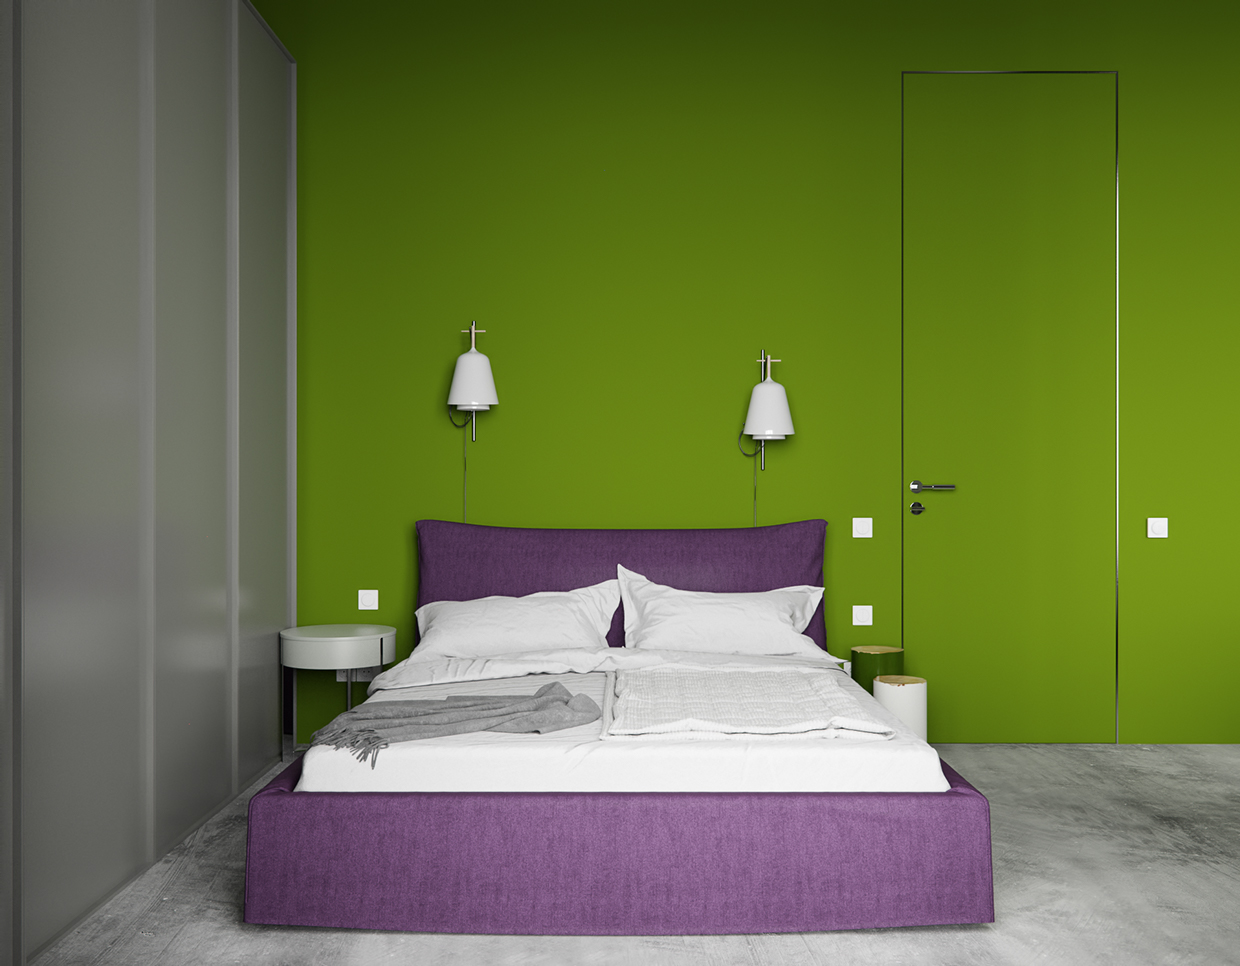 公寓装修,一居室装修,10-15万装修,40平米装修,混搭风格,卧室,卧室背景墙,绿色,隐形门